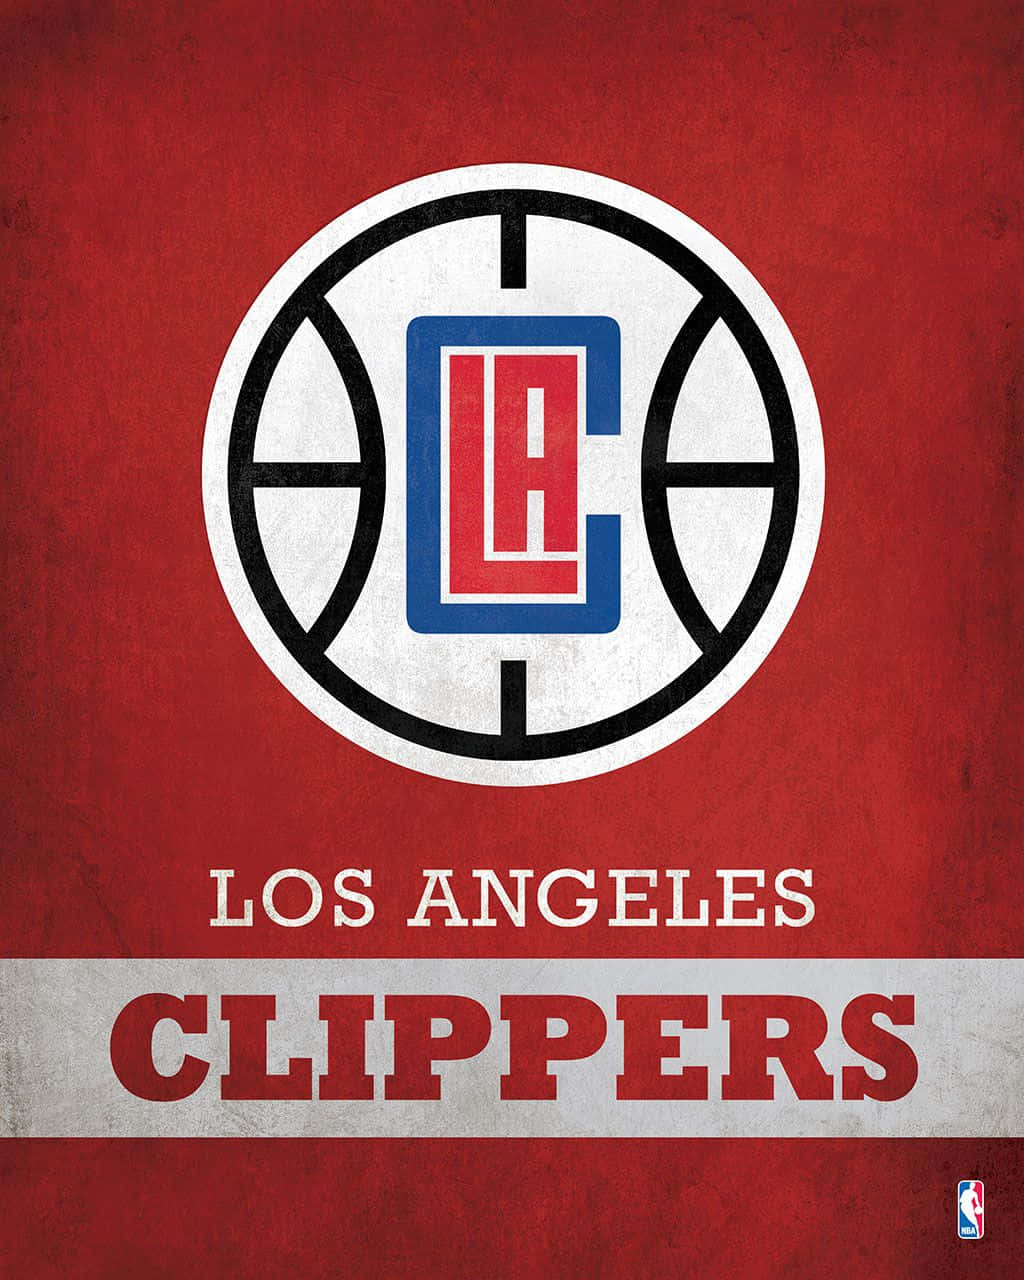 Ilustraciónroja Del Equipo De Baloncesto Nba La Clippers Fondo de pantalla